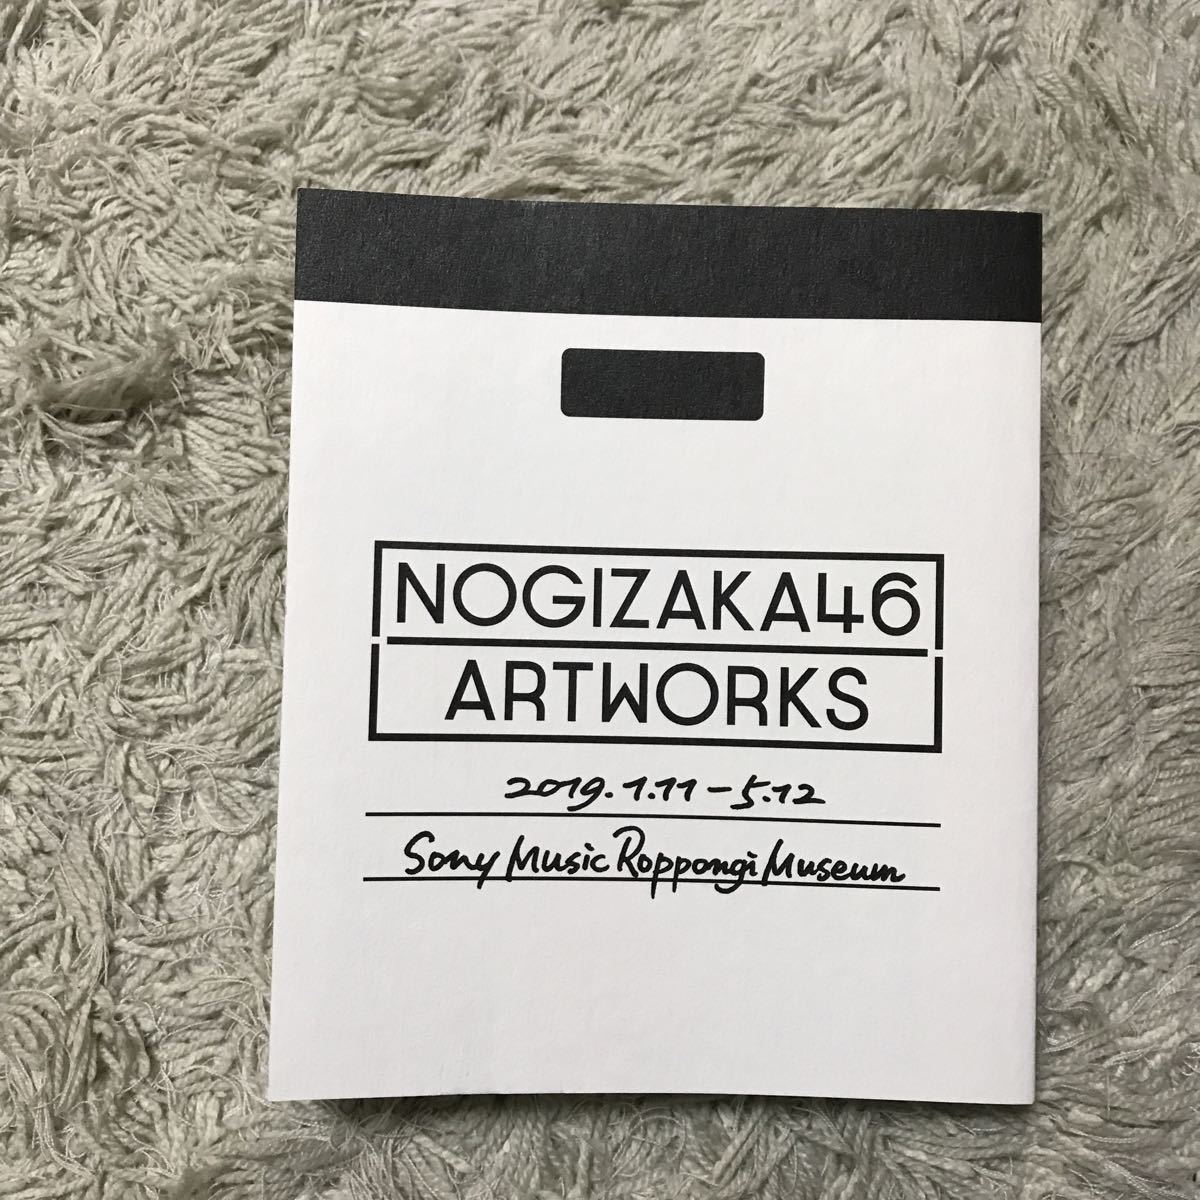 乃木坂46 Artworks だいたいぜんぶ展 アートワークス 図録 写真集 ソニーミュージック